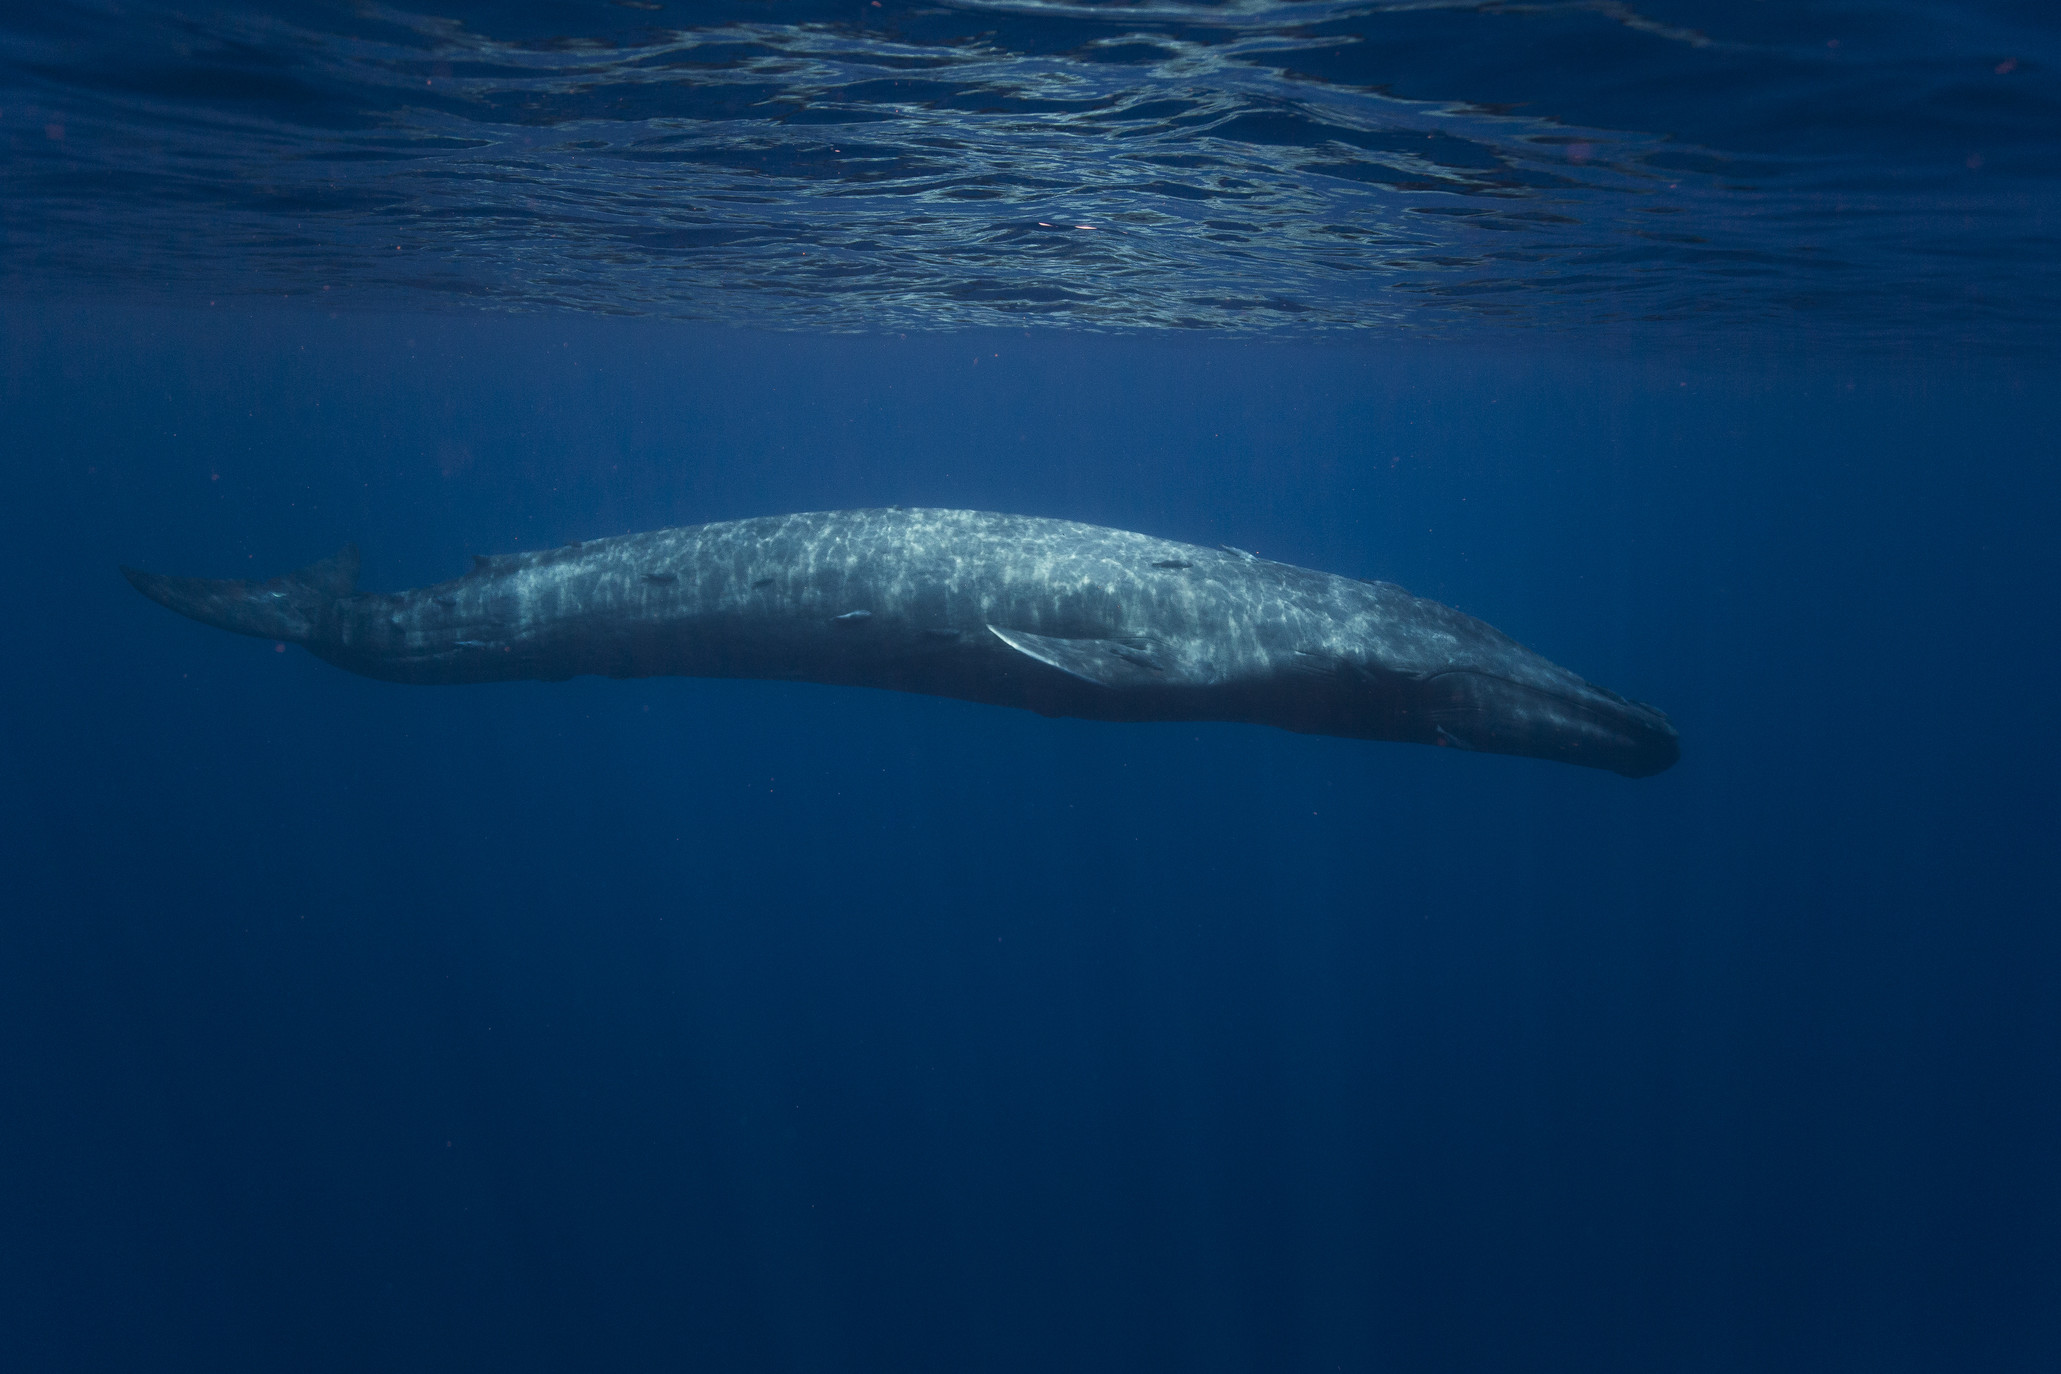 Blue whale underwater in Indian Ocean